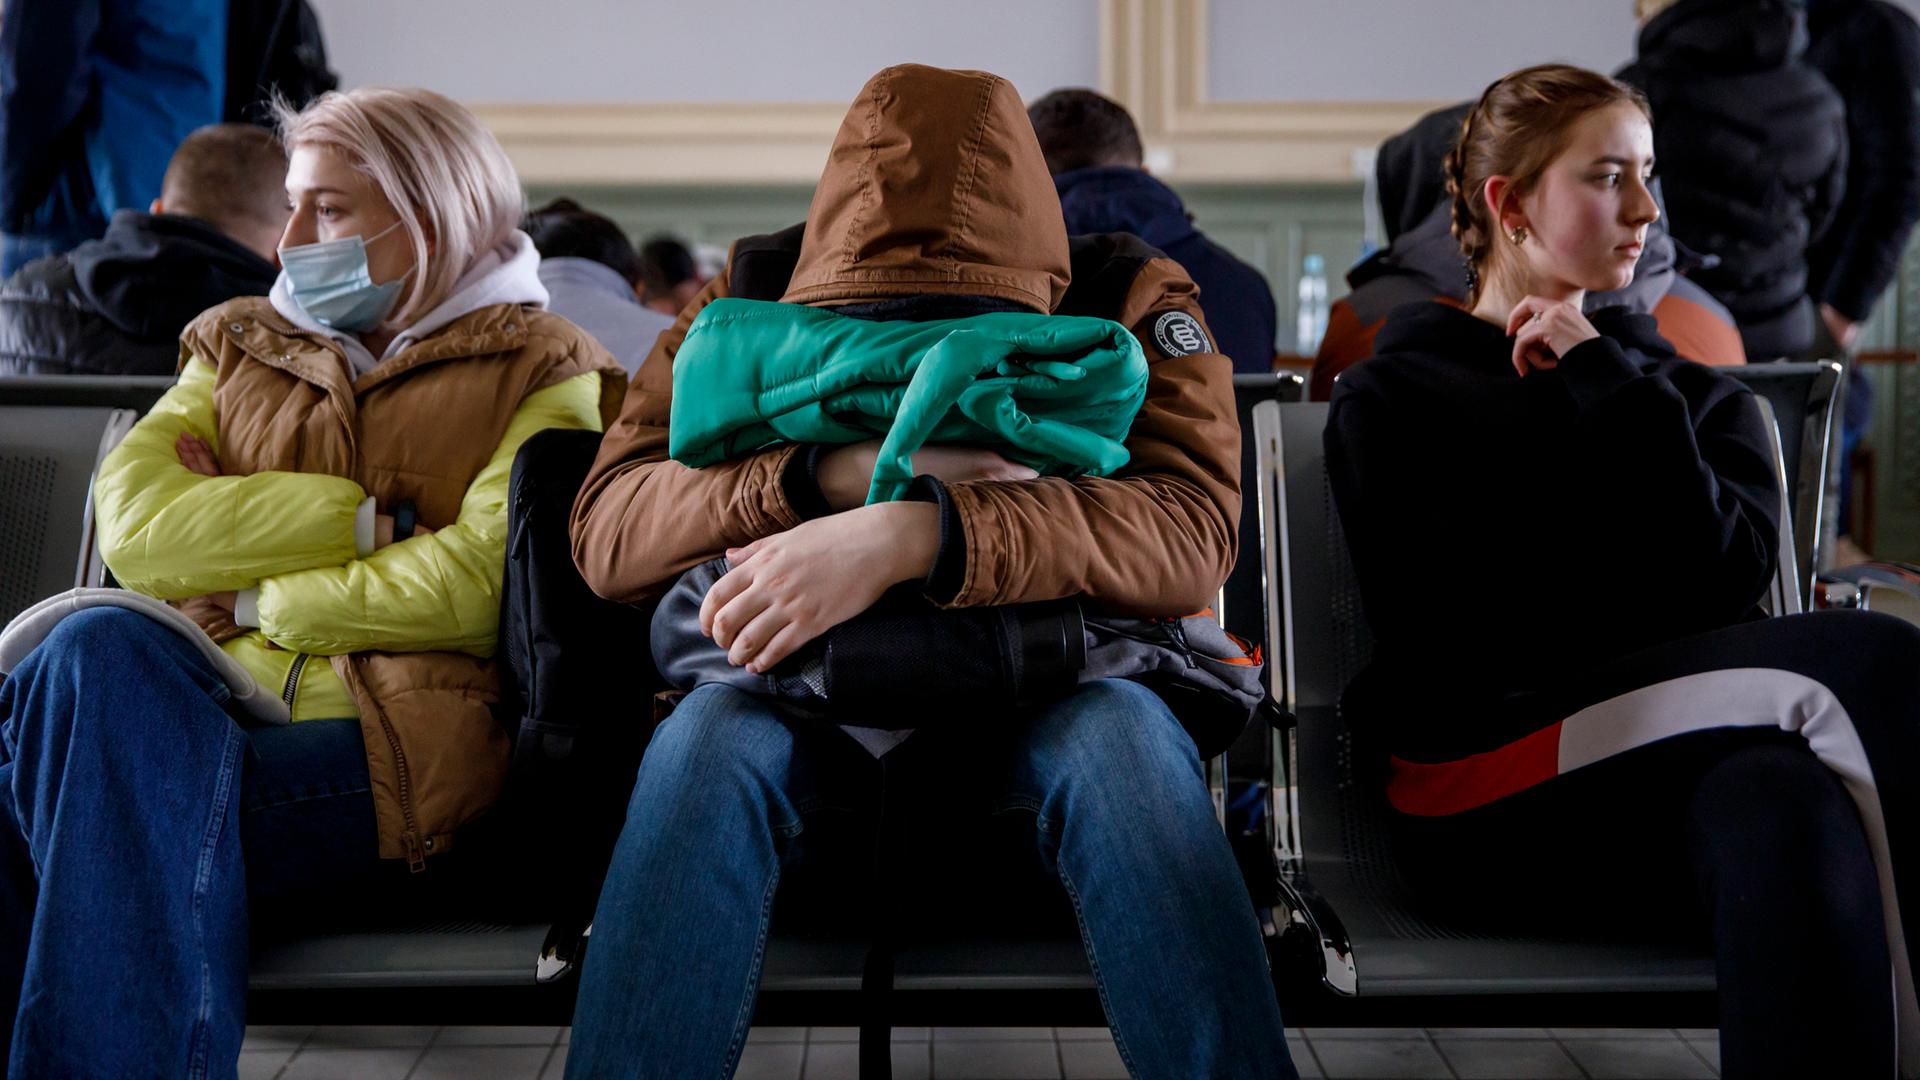 Menschen sitzen in der Wartehalle eines Bahnhofs. Eine Person hat ihren Kopf auf einer Tasche abgelegt.